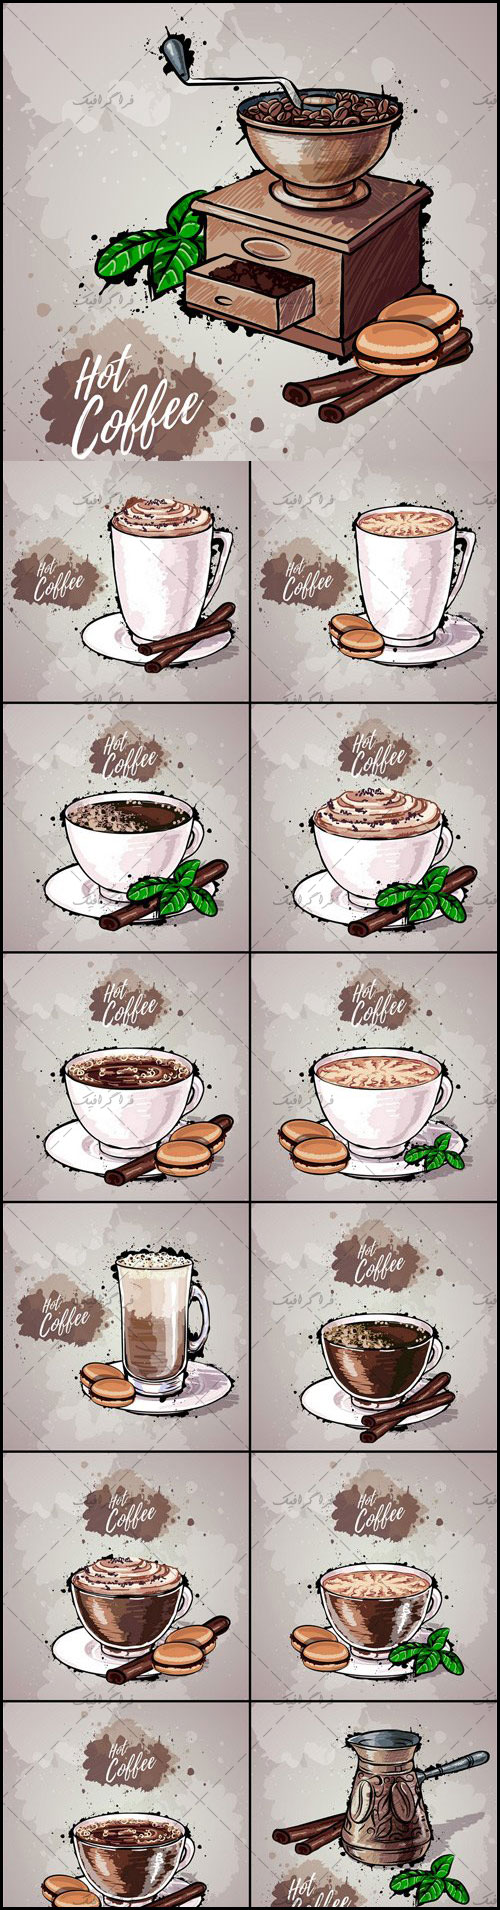 دانلود وکتور های فنجان قهوه و هات چاکلت - طرح ترسیمی